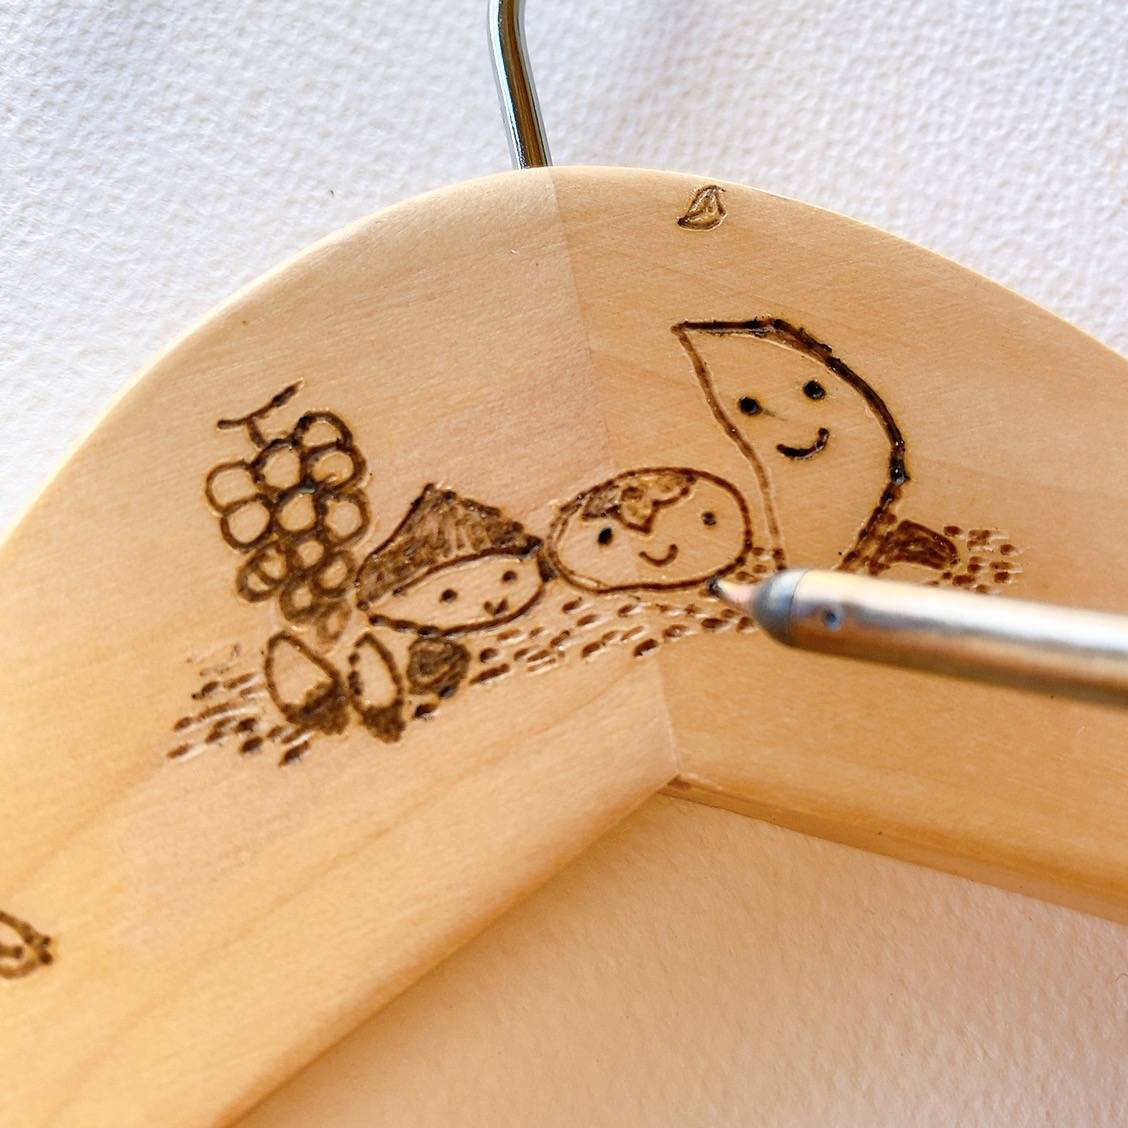 ウッドバーニングで一つ一つ心を込めて描いた木の器 | ブログ